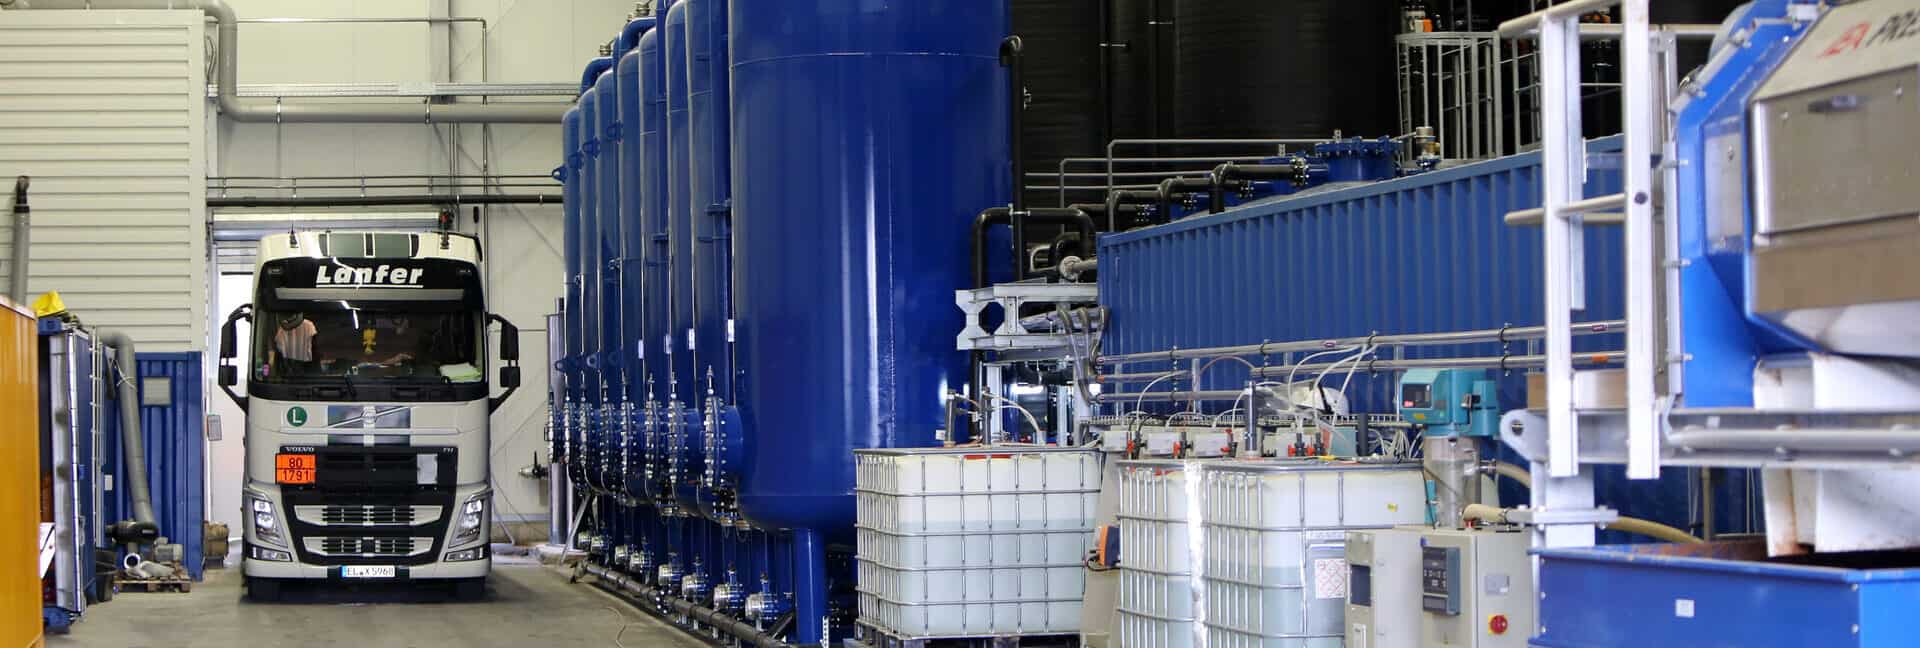 BAUER Resources GmbH - Wasserreinigungsanlage in eigens errichteter Behandlungshalle